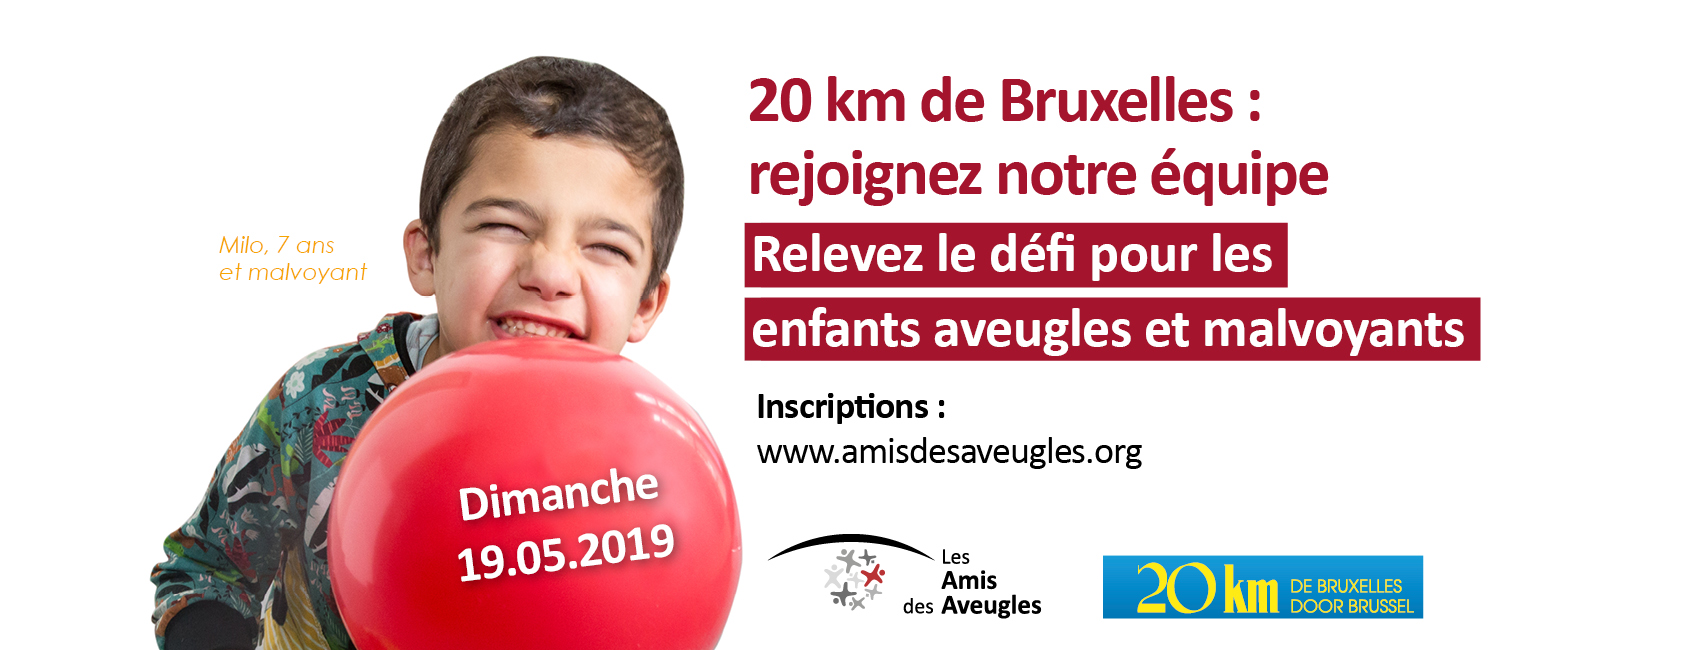 Courez les 20 km de Bruxelles pour les enfants malvoyants